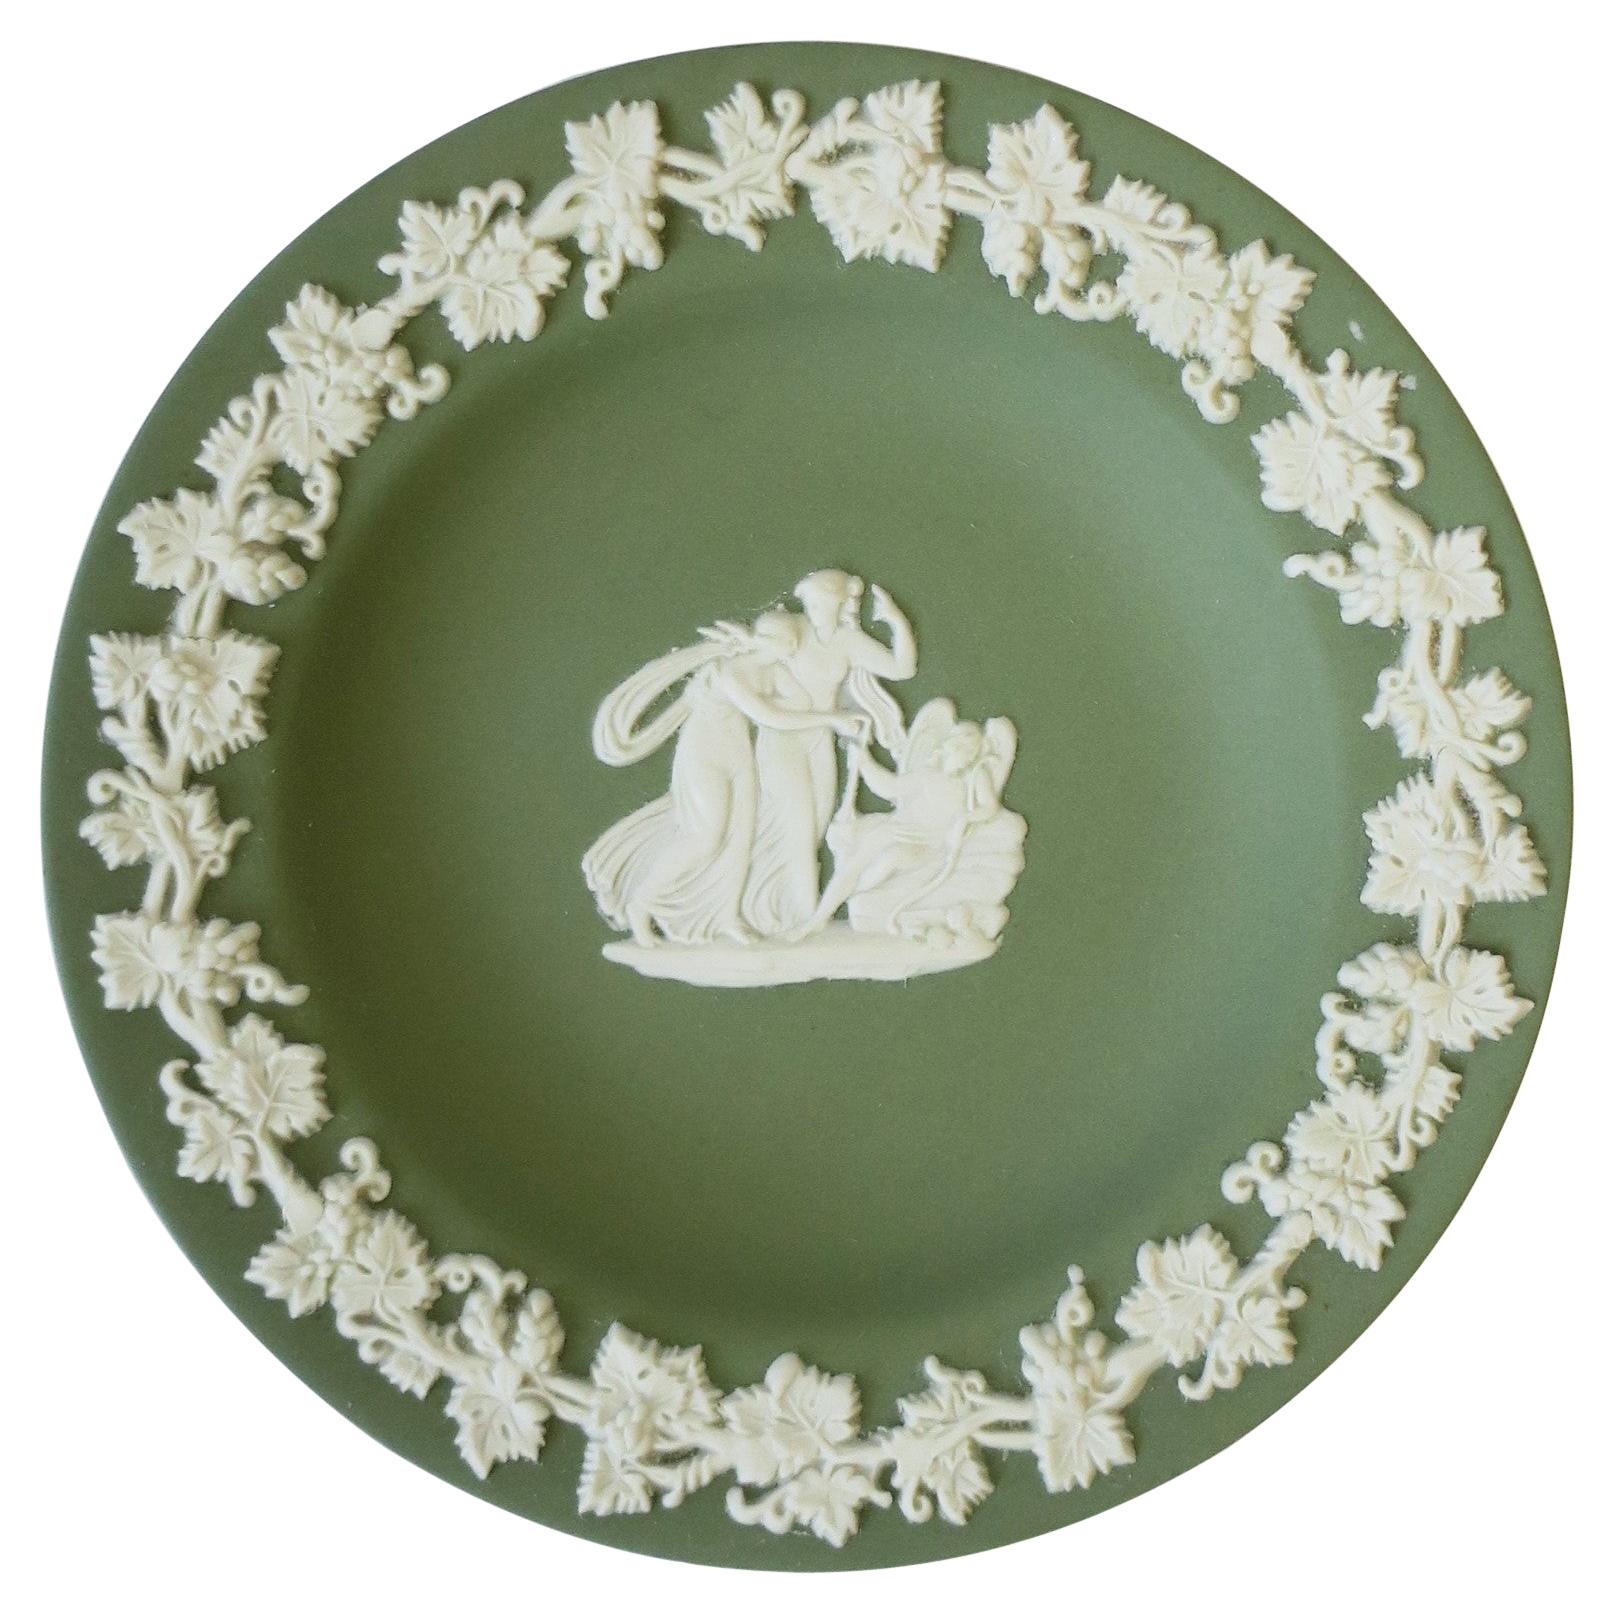 English Wedgwood Jasperware Jewelry Dish with Neoclassical Design